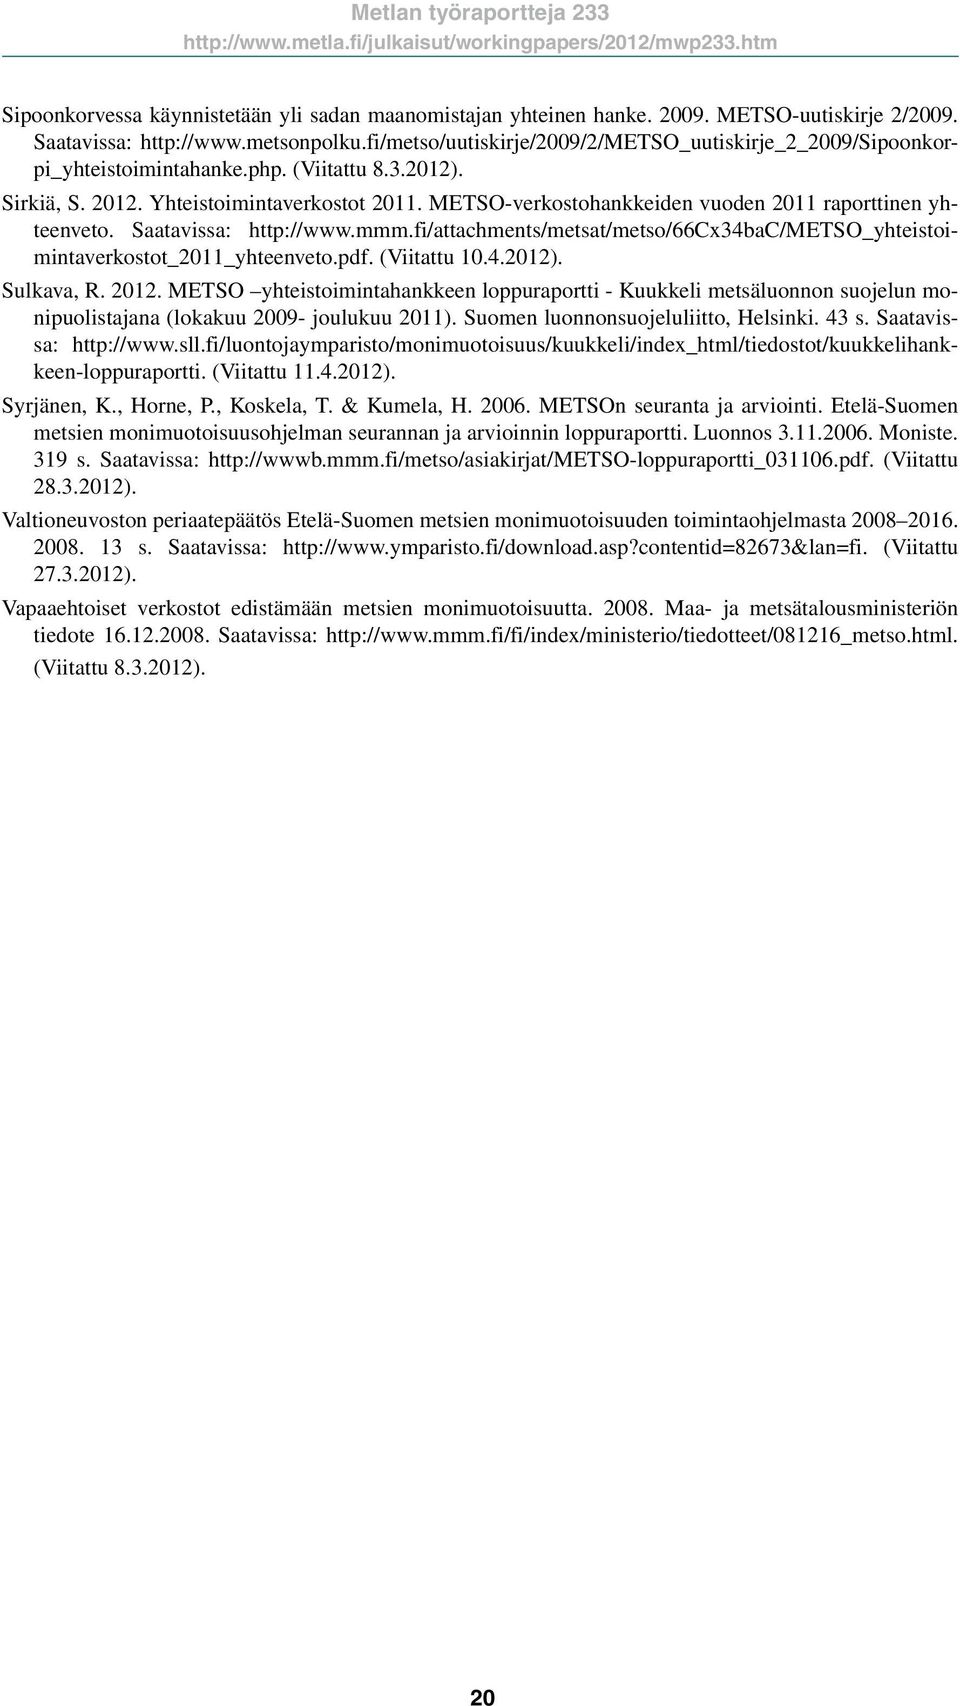 METSO-verkostohankkeiden vuoden 211 raporttinen yhteenveto. Saatavissa: http://www.mmm.fi/attachments/metsat/metso/66cx34bac/metso_yhteistoimintaverkostot_211_yhteenveto.pdf. (Viitattu 1.4.212).